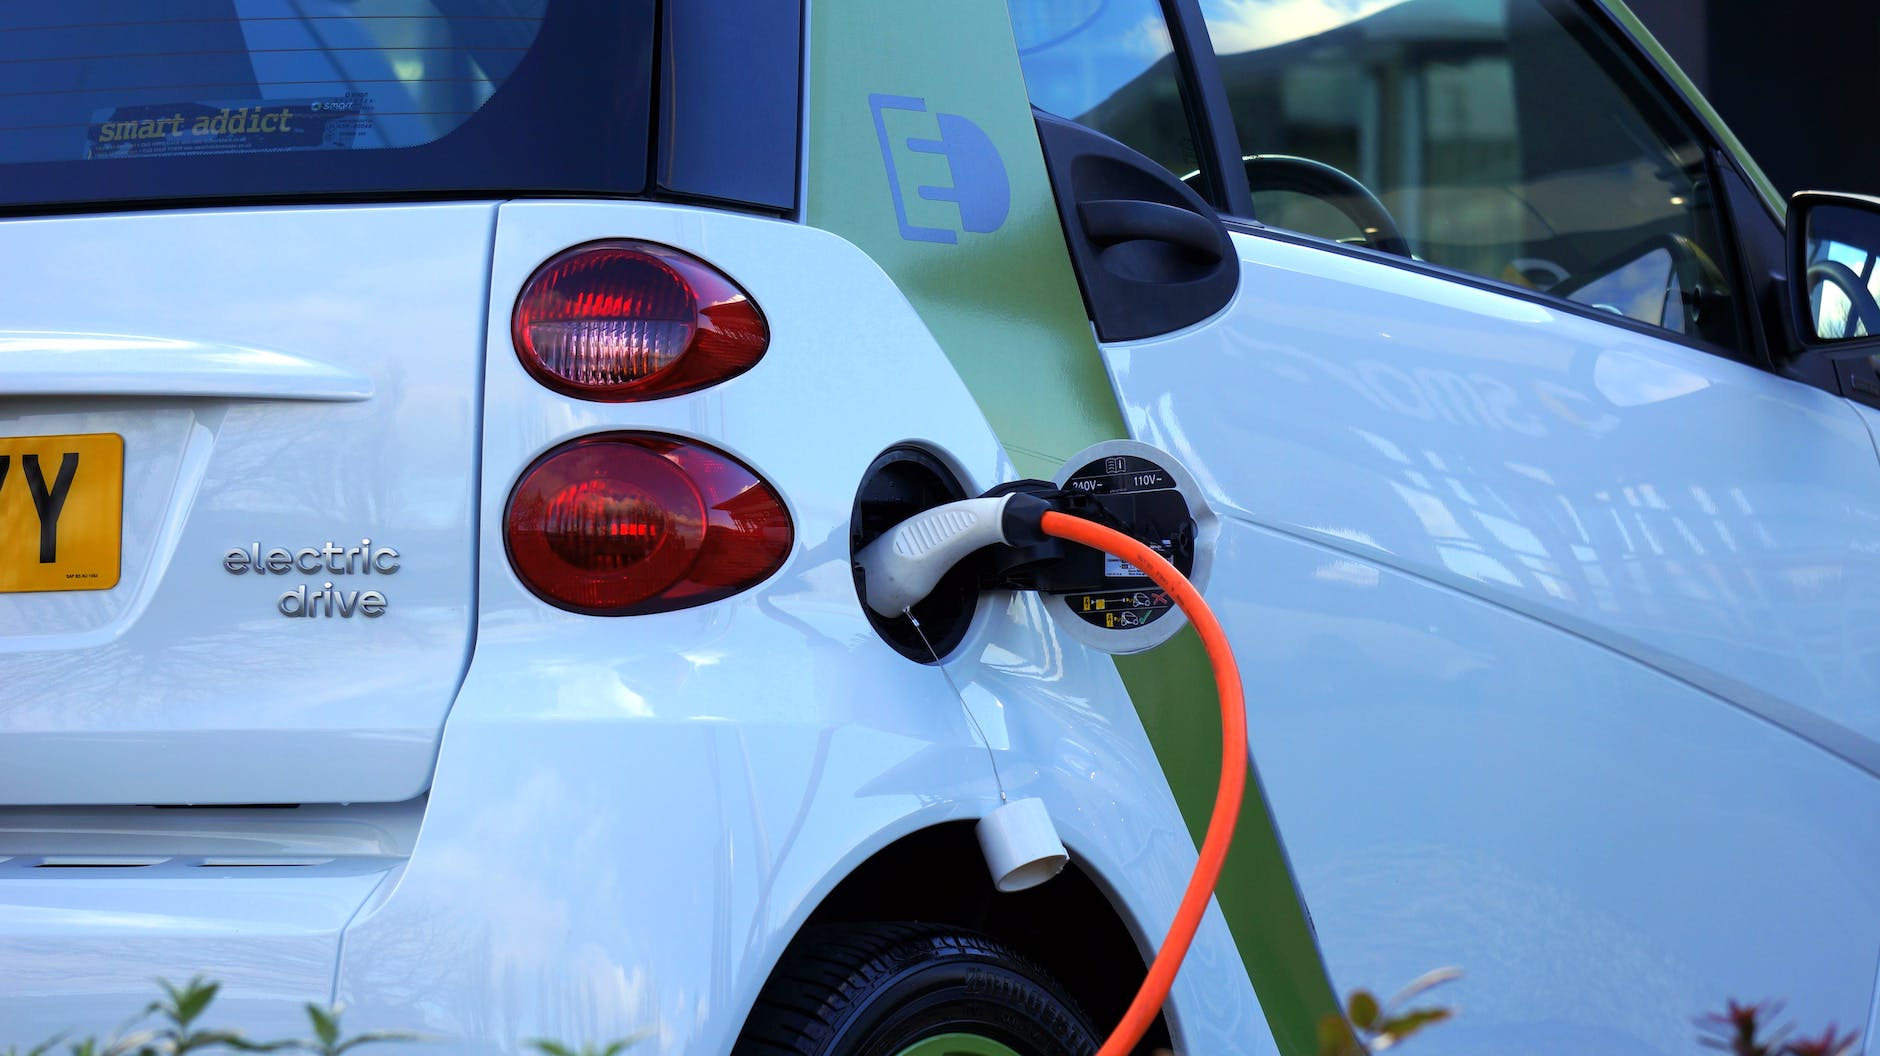 Aandeel elektrische auto’s stijgt, maar valt in het niet bij het aandeel auto’s met een verbrandingsmotor